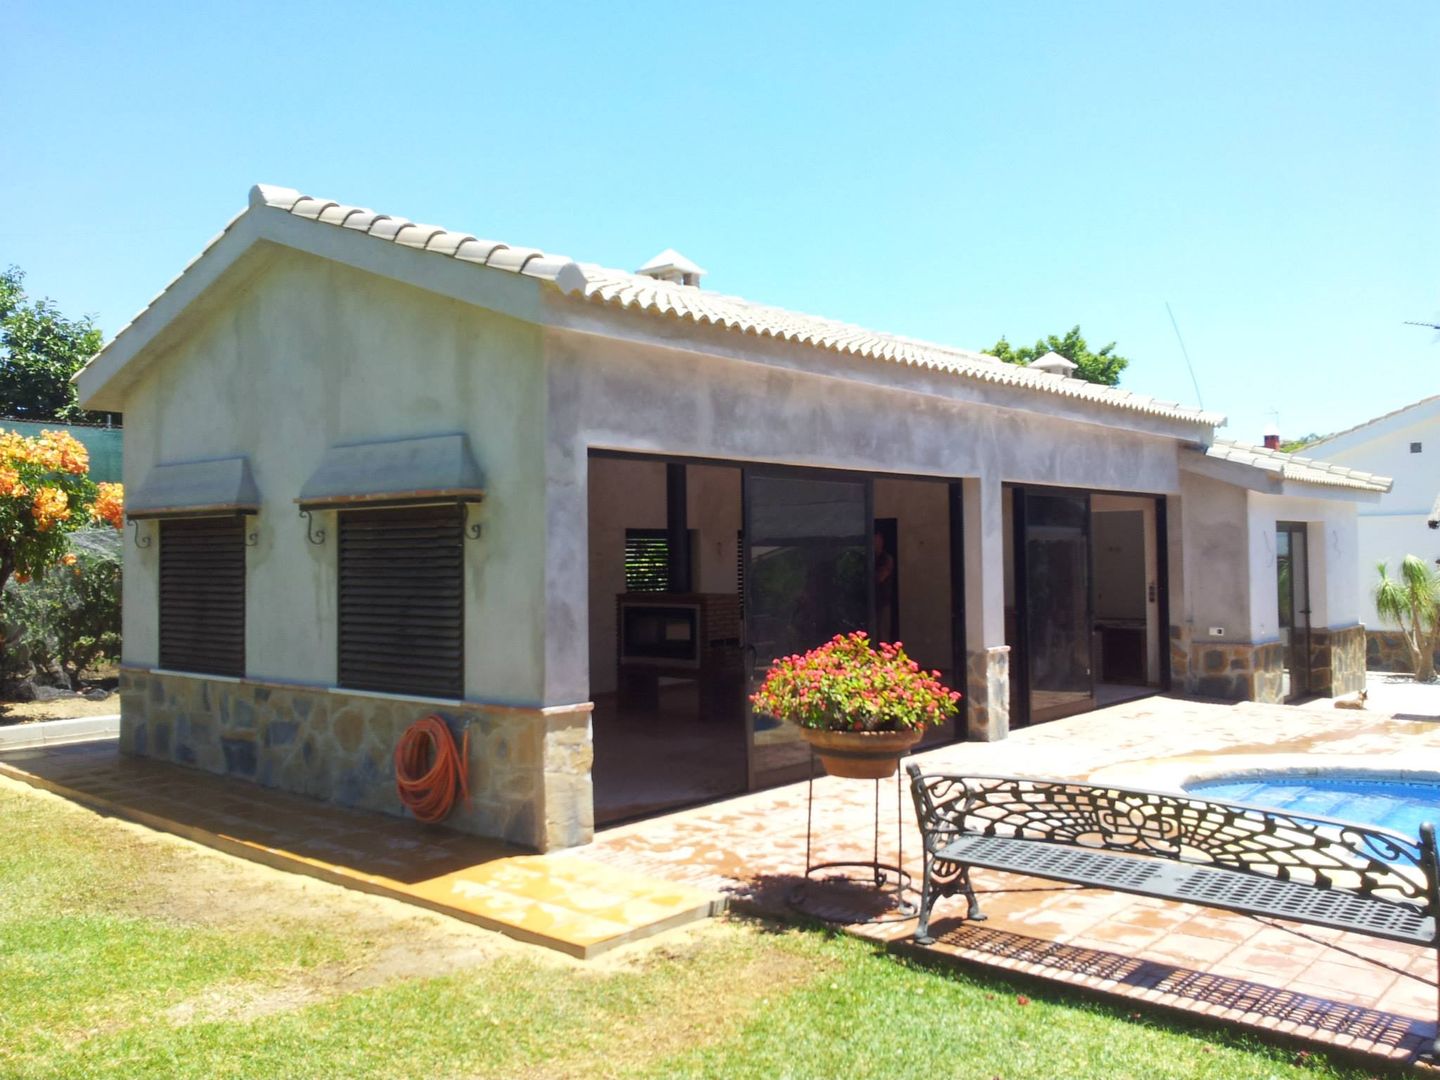 Casa de piscina - La Sierrezuela, gsformato gsformato Classic style houses